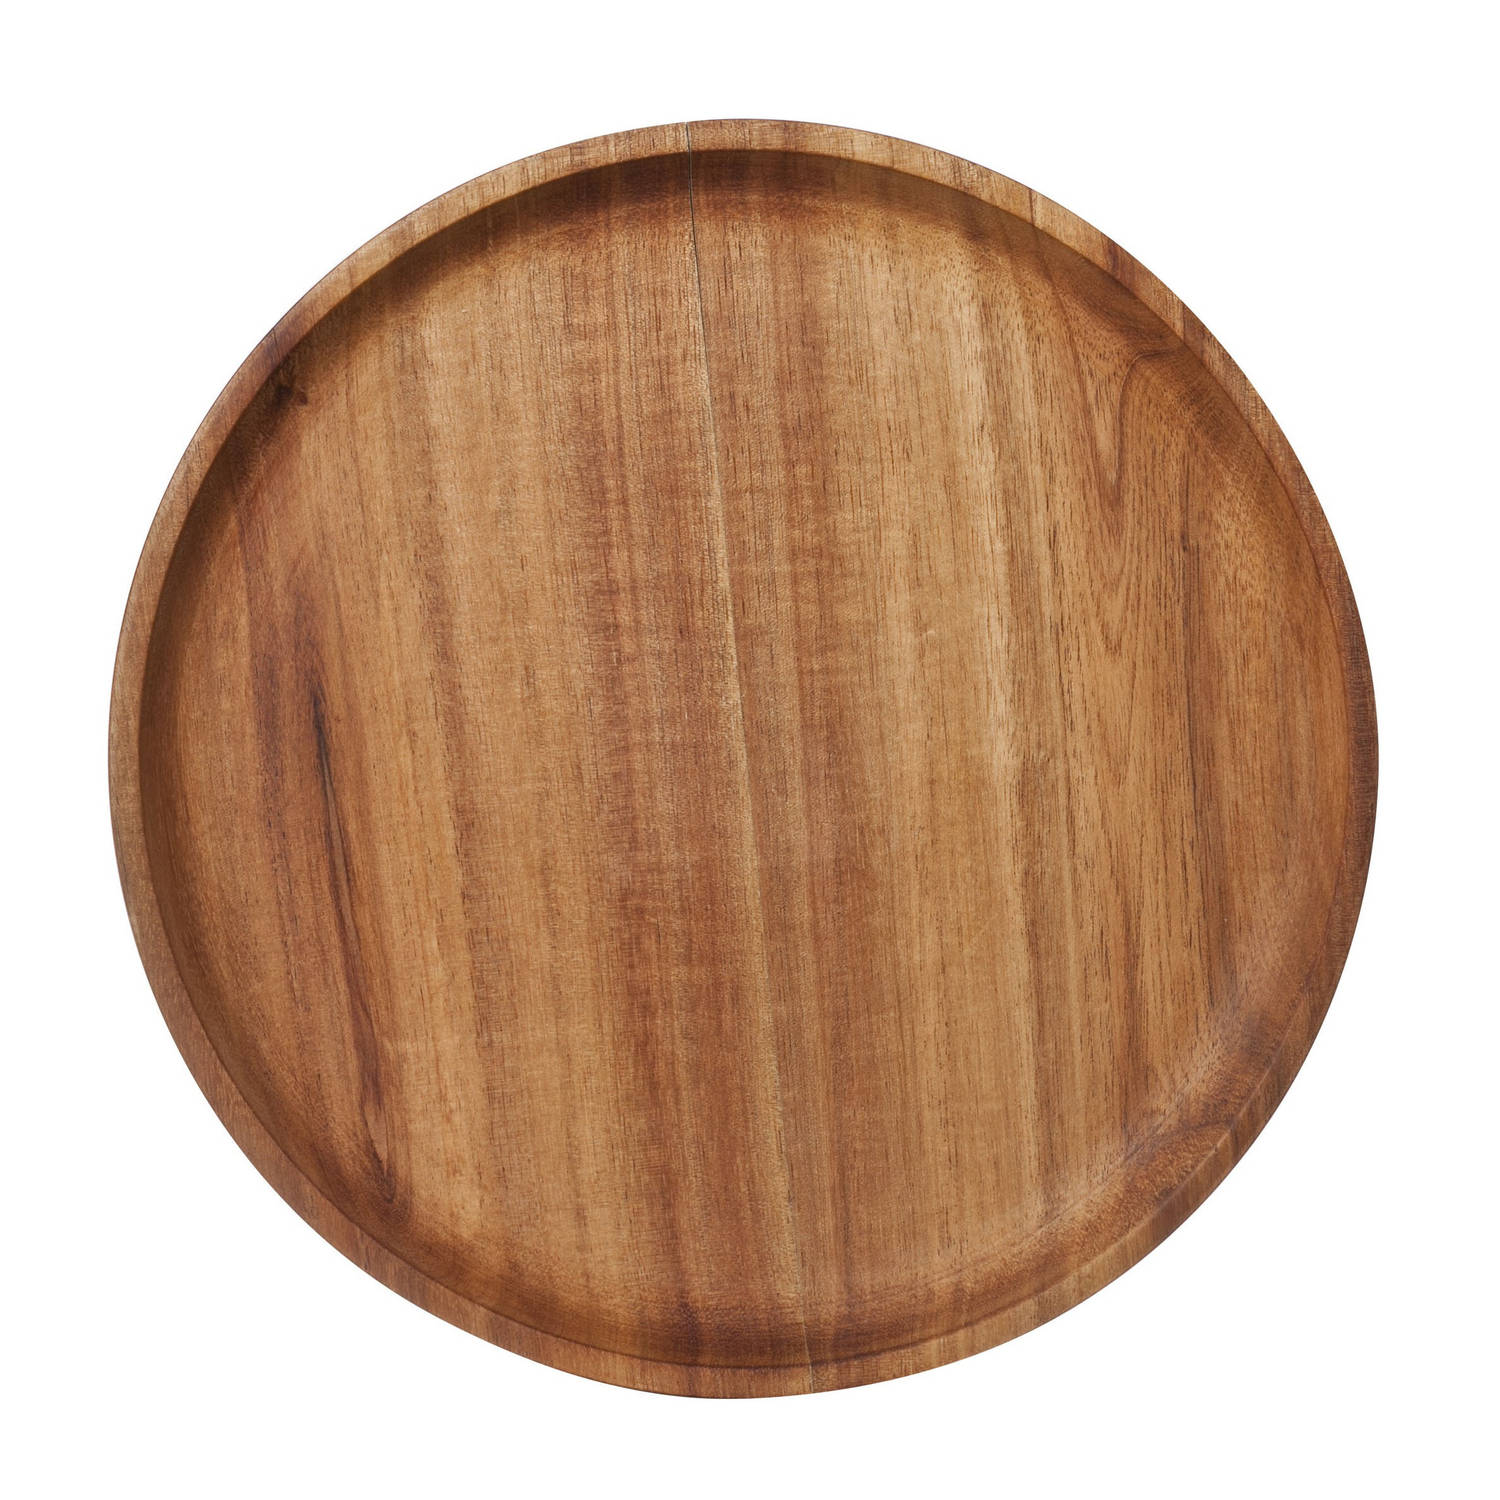 Kaarsenbord/kaarsenplateau bruin hout rond D22 cm - Kaarsenplateaus